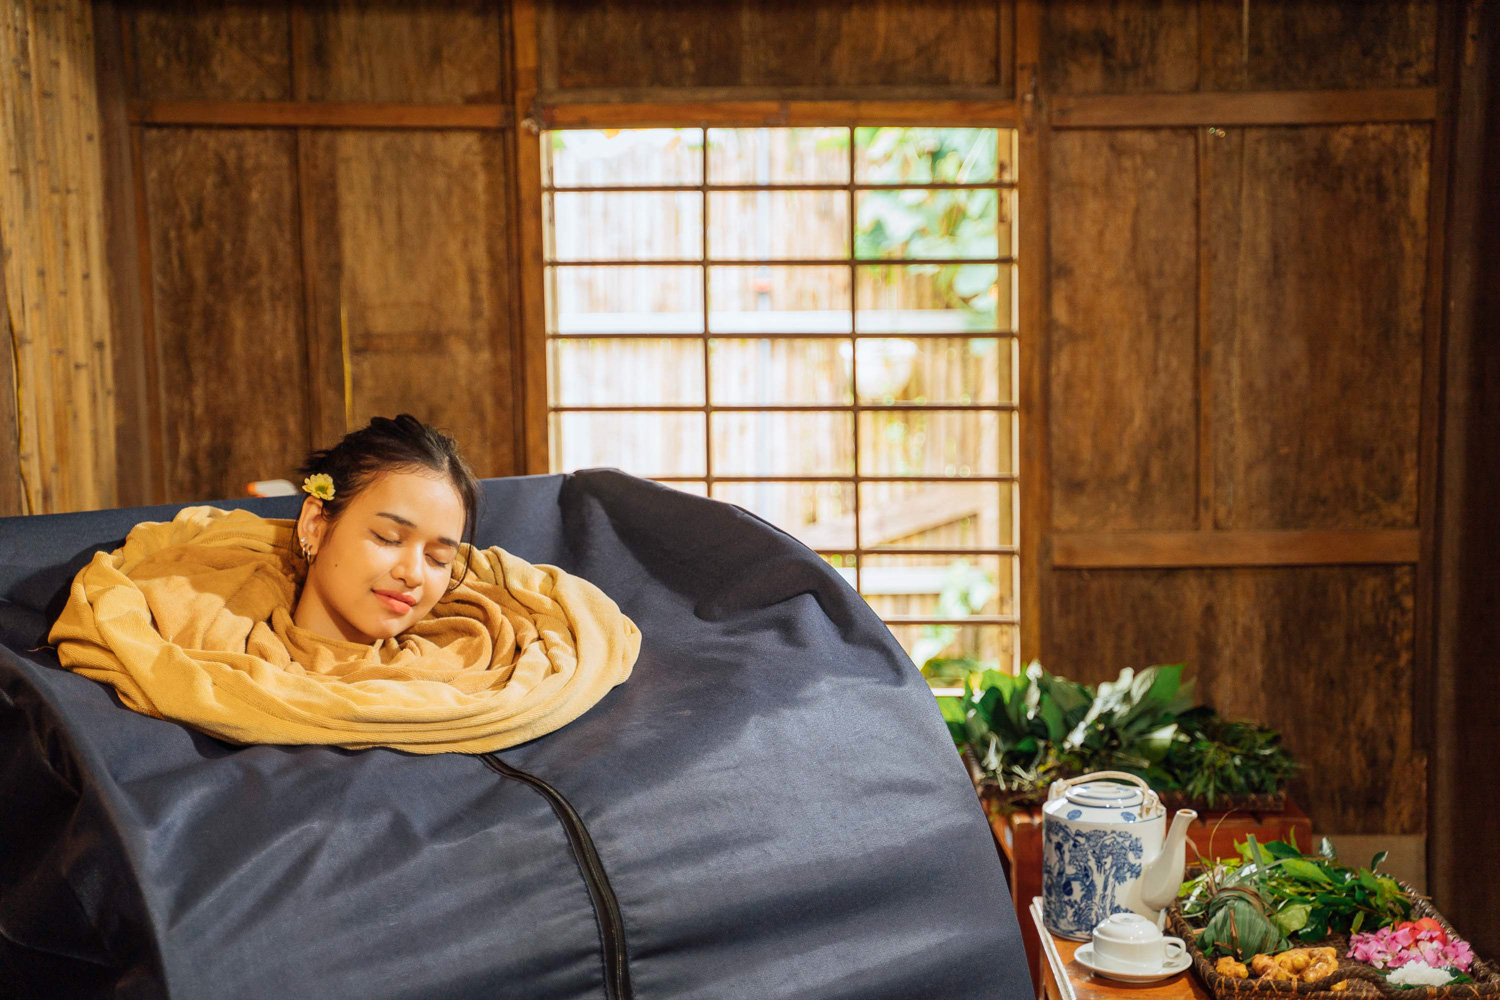 Nhà sauna với hoạt động xông hơi thảo mộc với những nguyên liệu được hái từ vườn nhà.